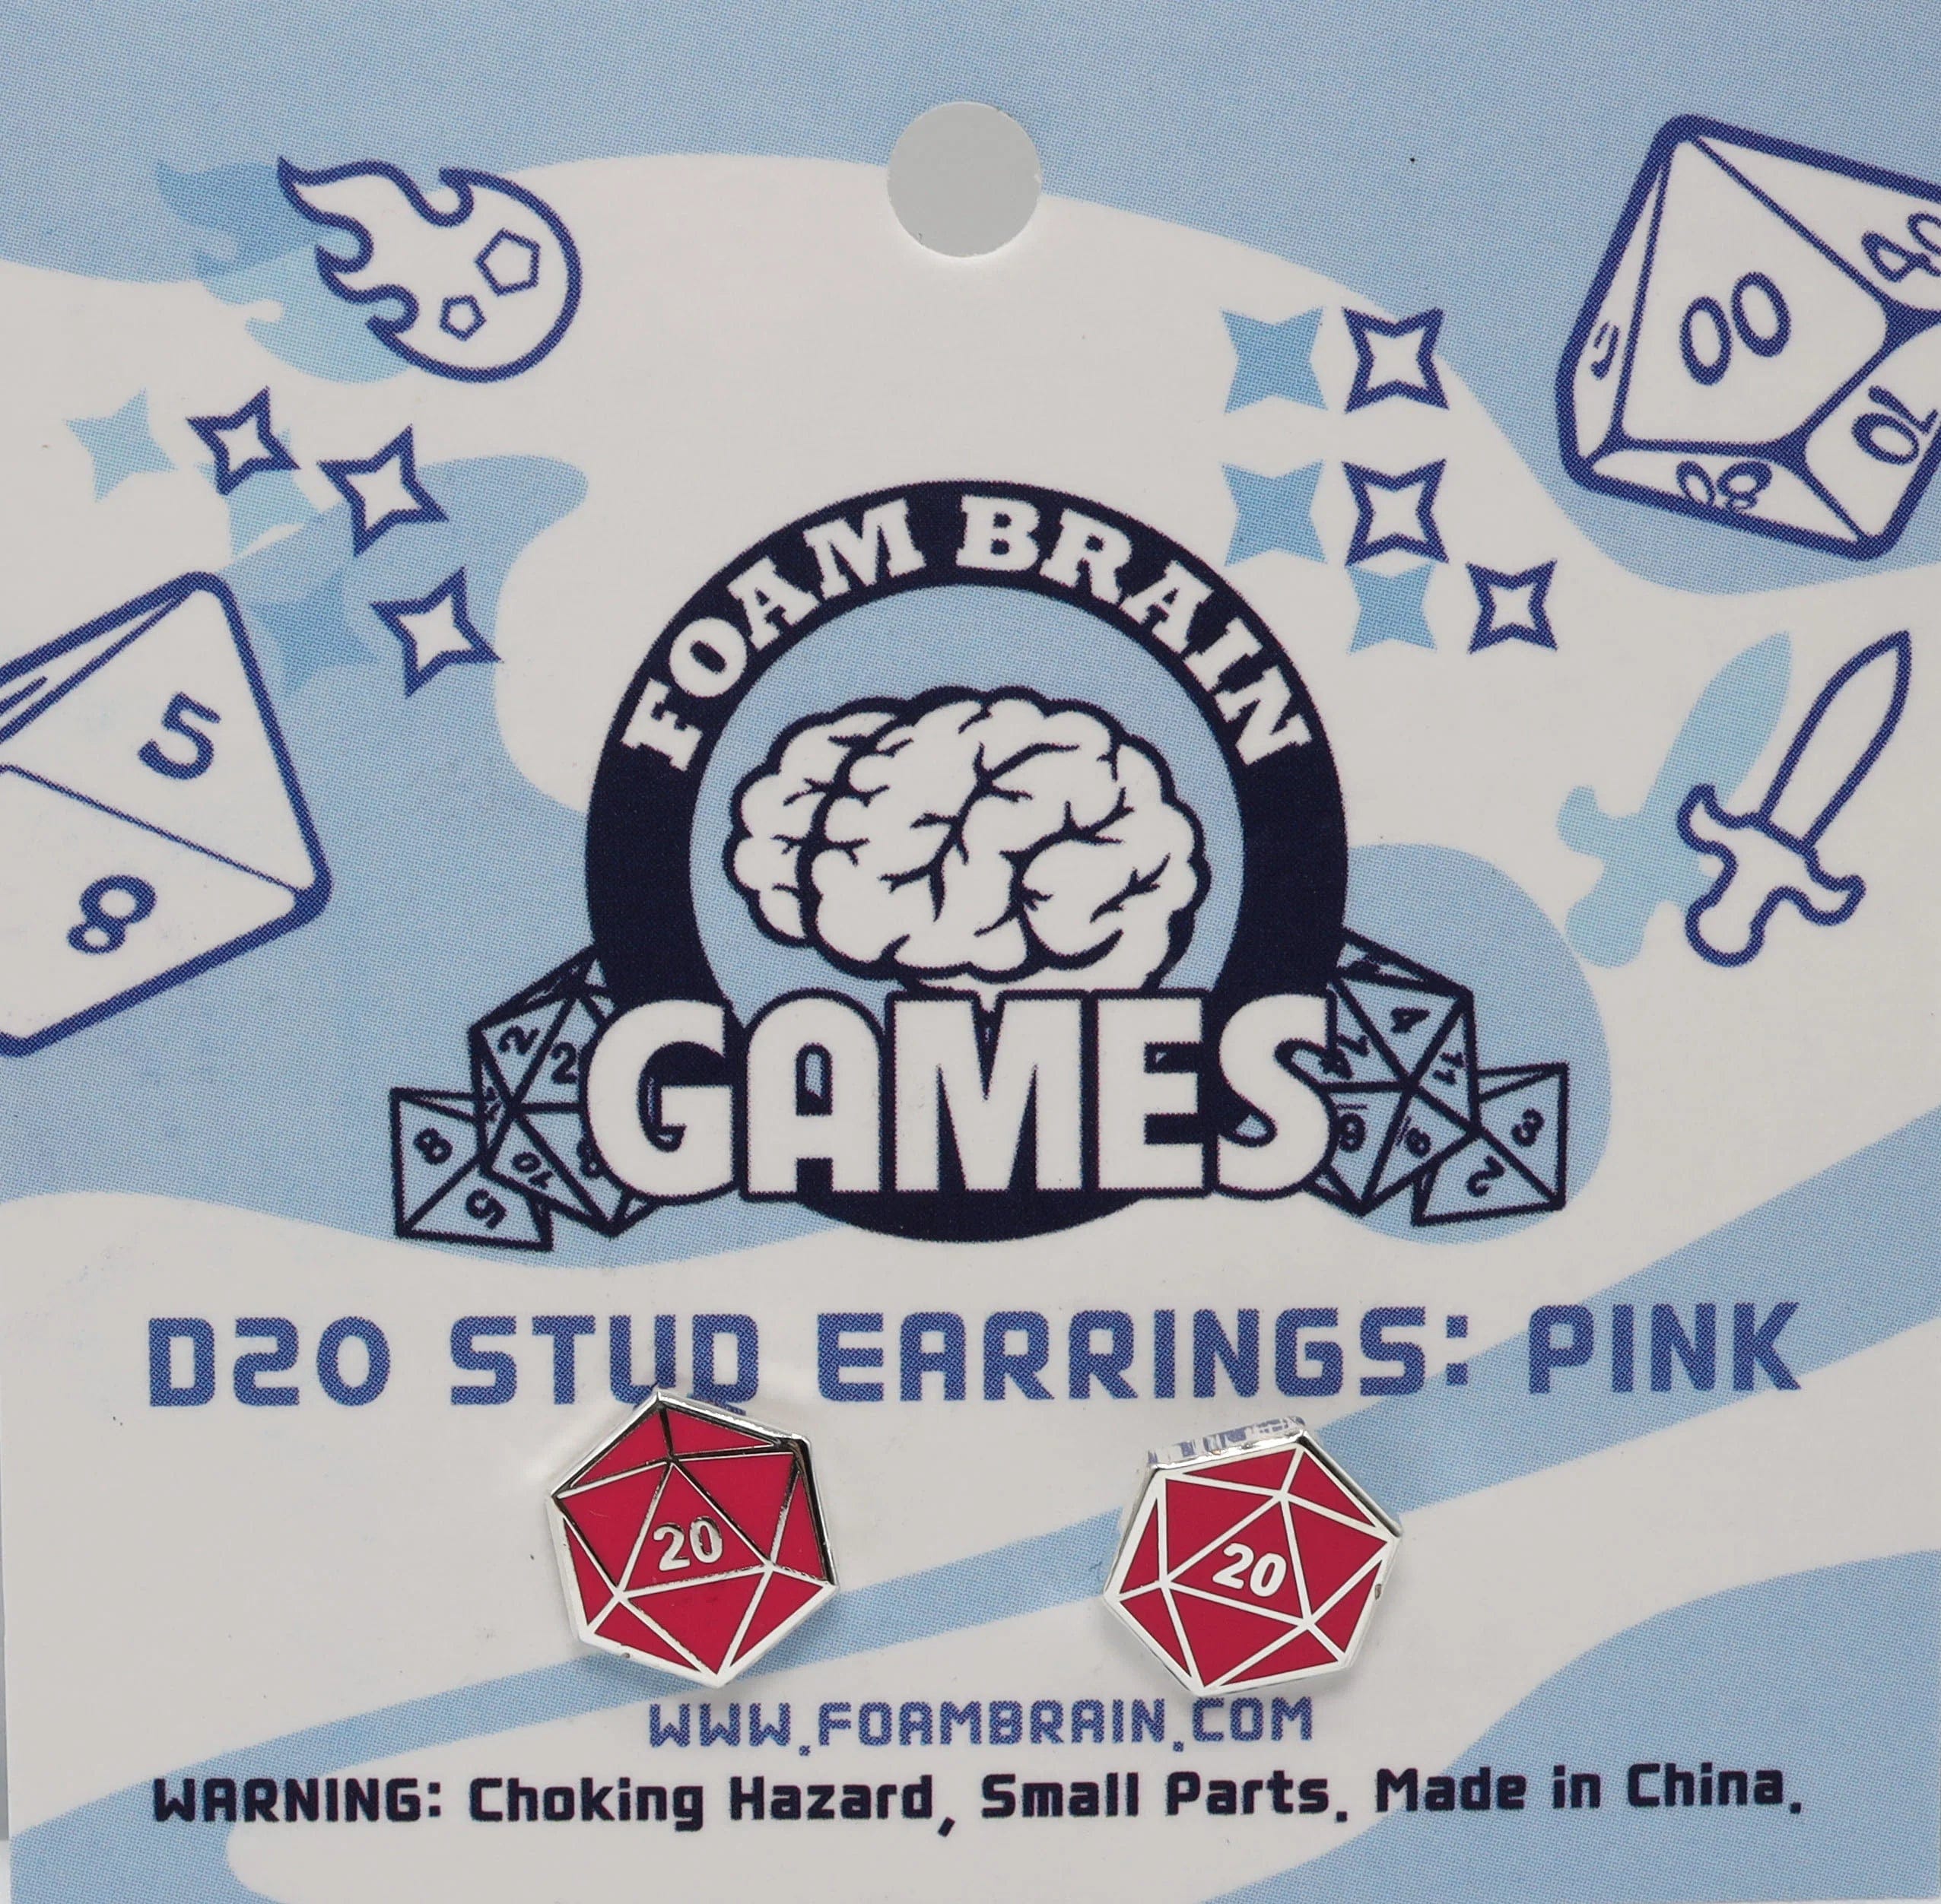 D20 Stud Earrings: Pink - Saltire Games